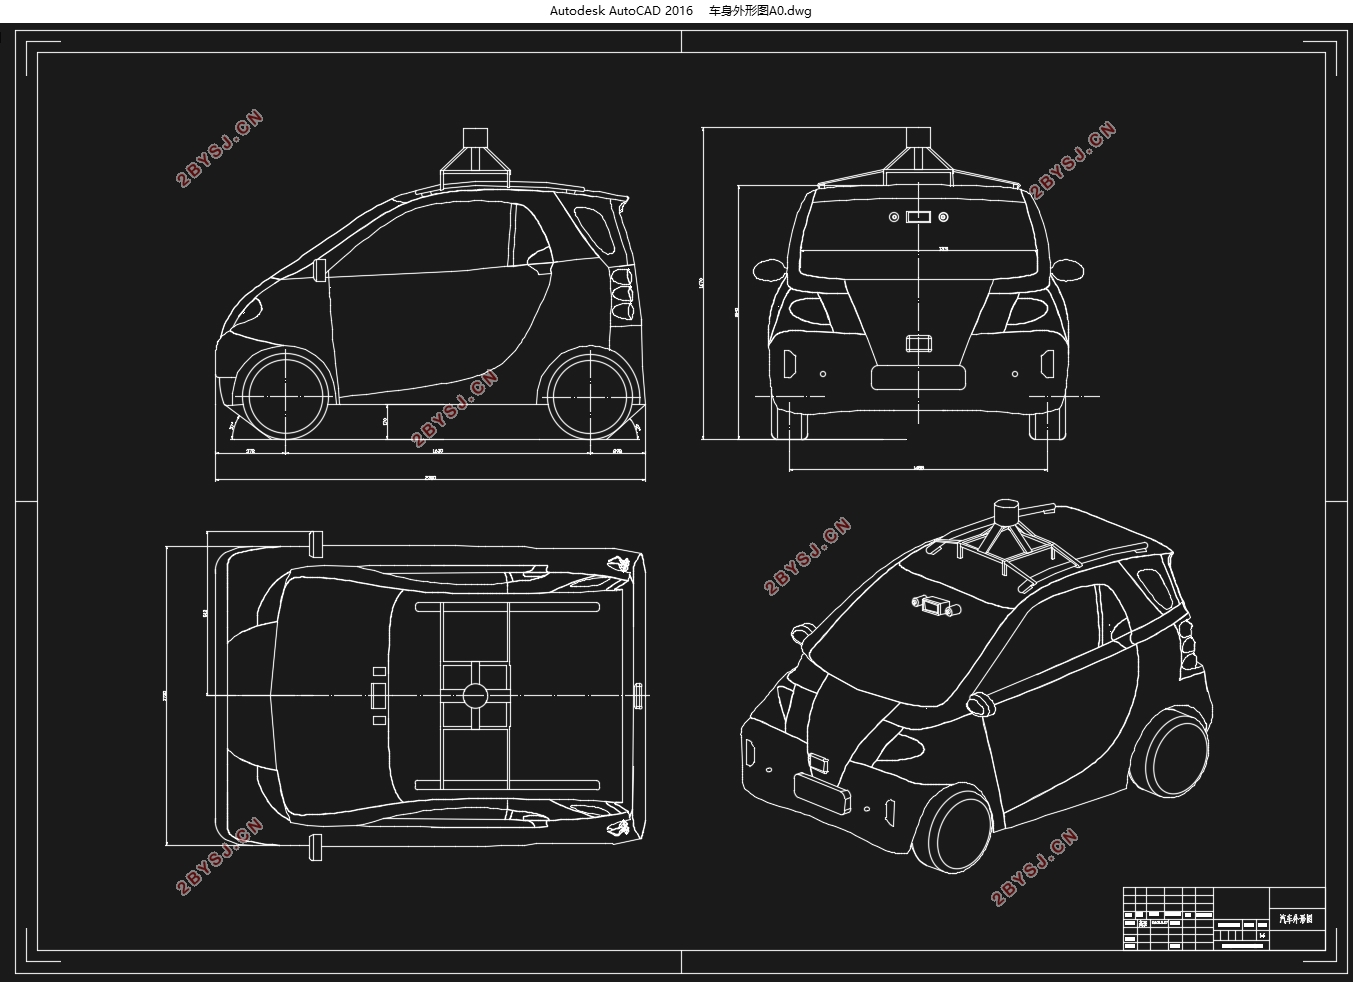 自动驾驶微型纯电动车总体设计(含CAD图,CATIA三维图)